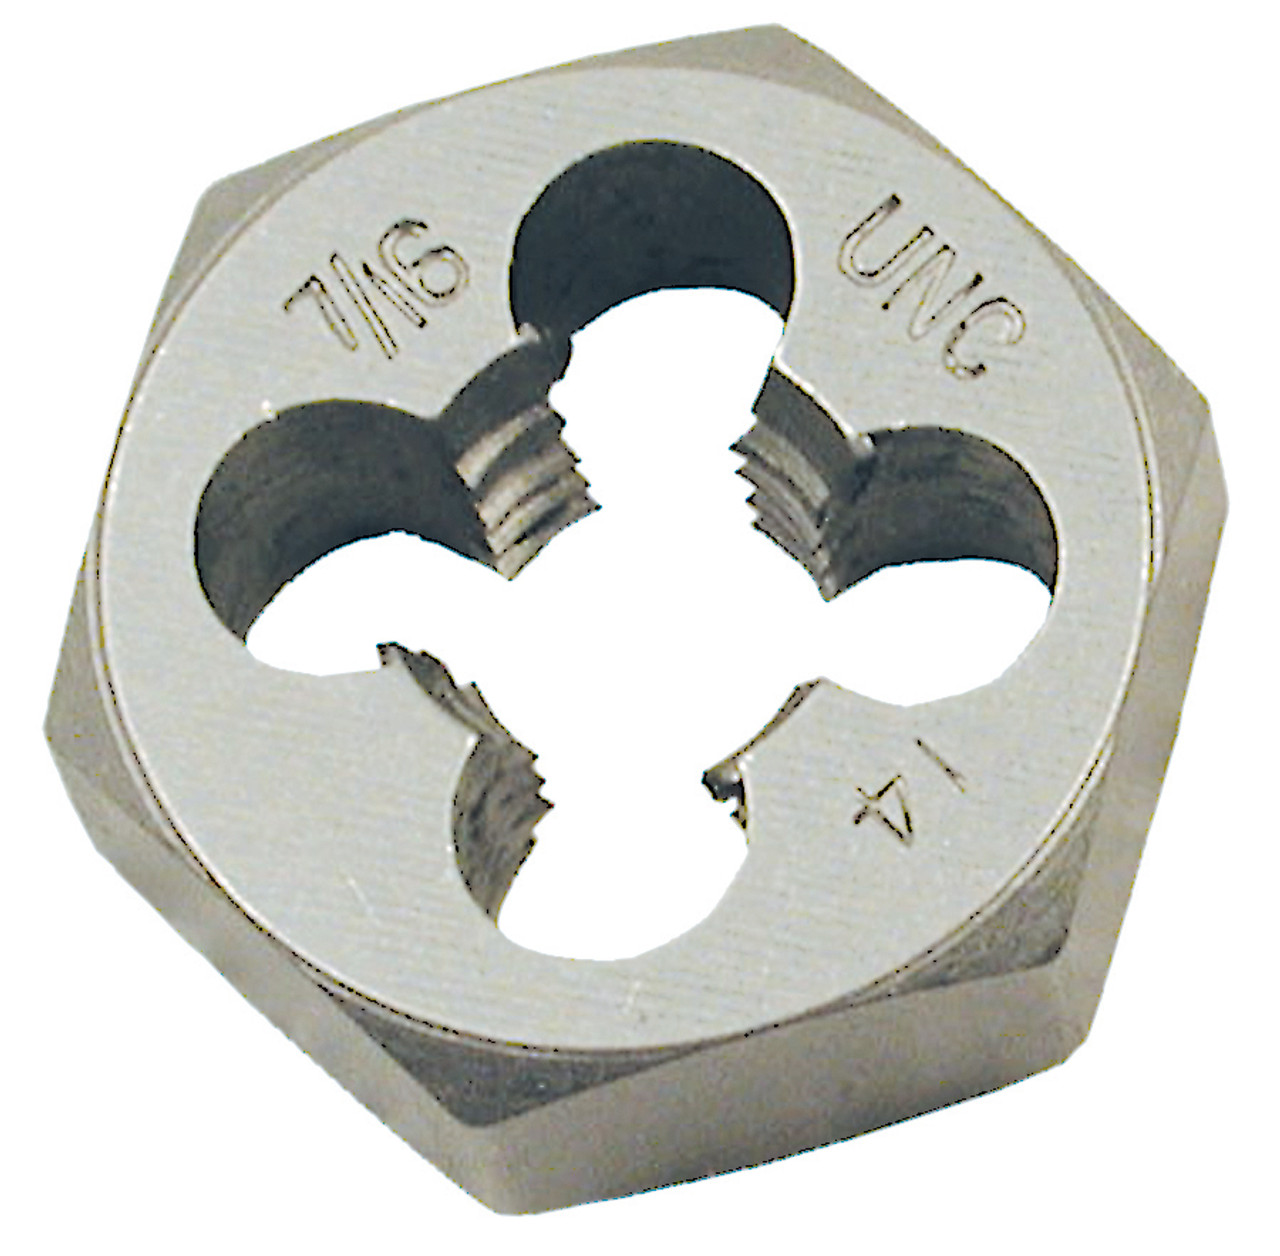 11mm-1.50 Coarse Alloy Steel Metric Hex Die (1" Hex) 530825